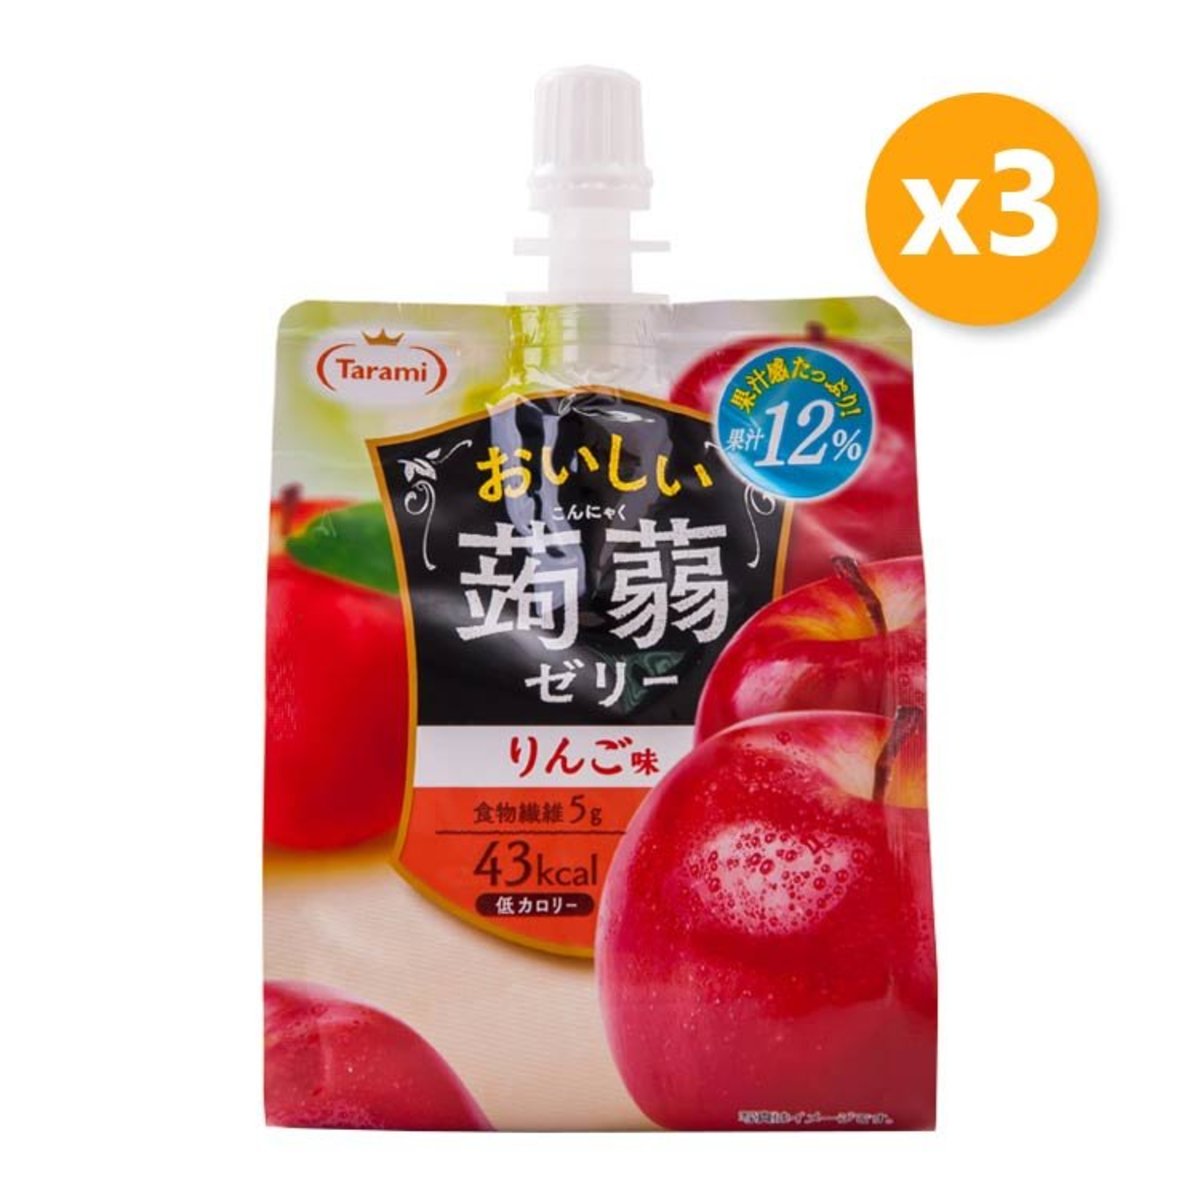 Tarami Oishii Konjac Jelly Apple Flavor 150g X 3pcs Hktvmall Online Shopping